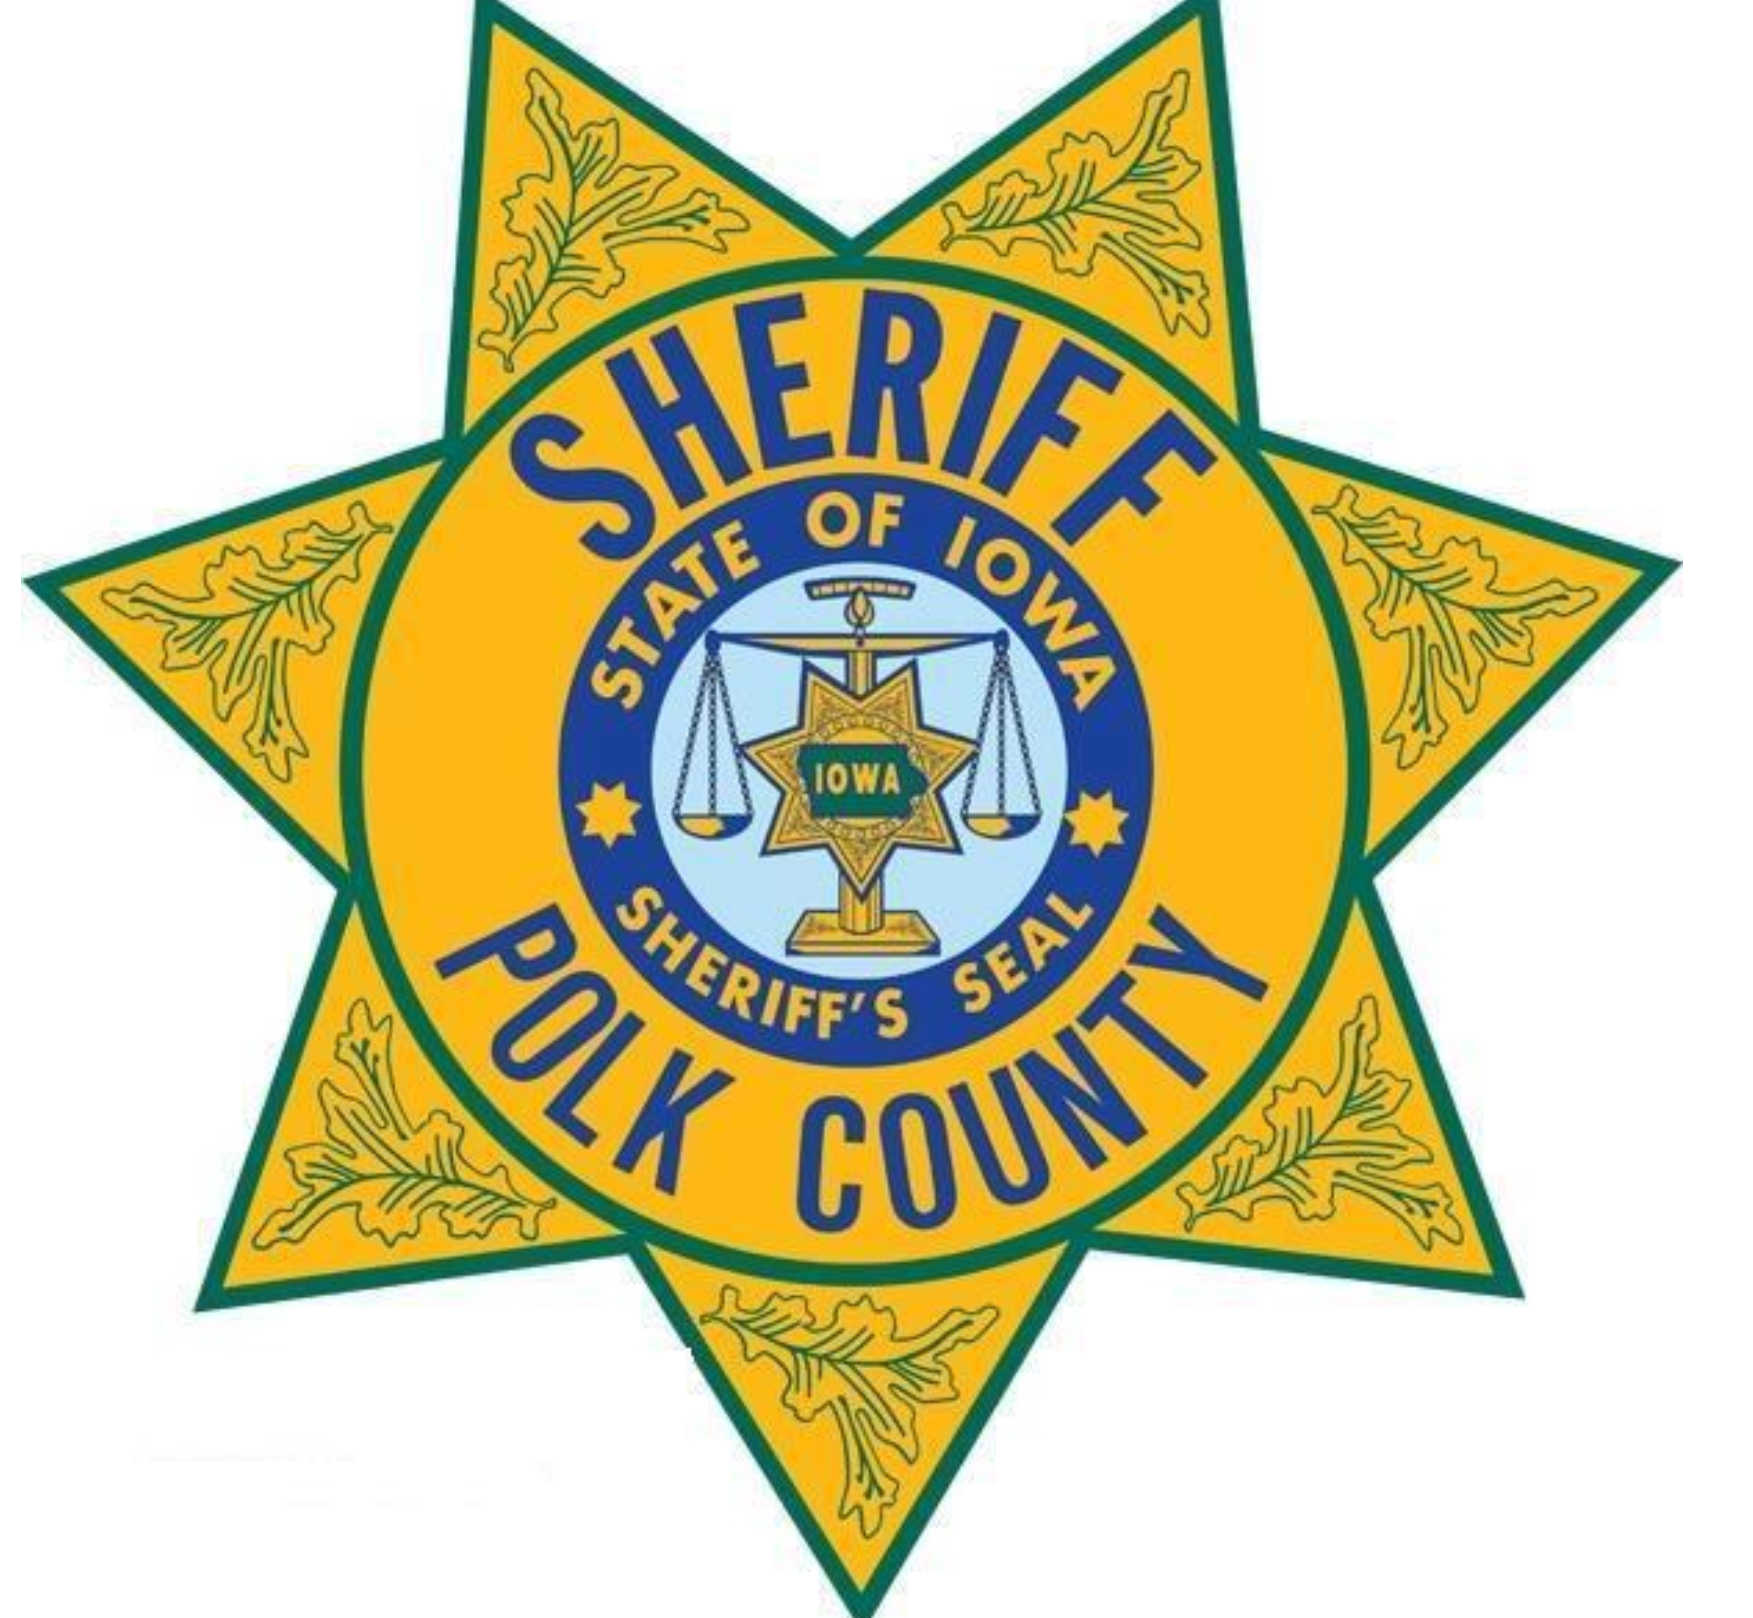 County Sheriff - Polk County Iowa